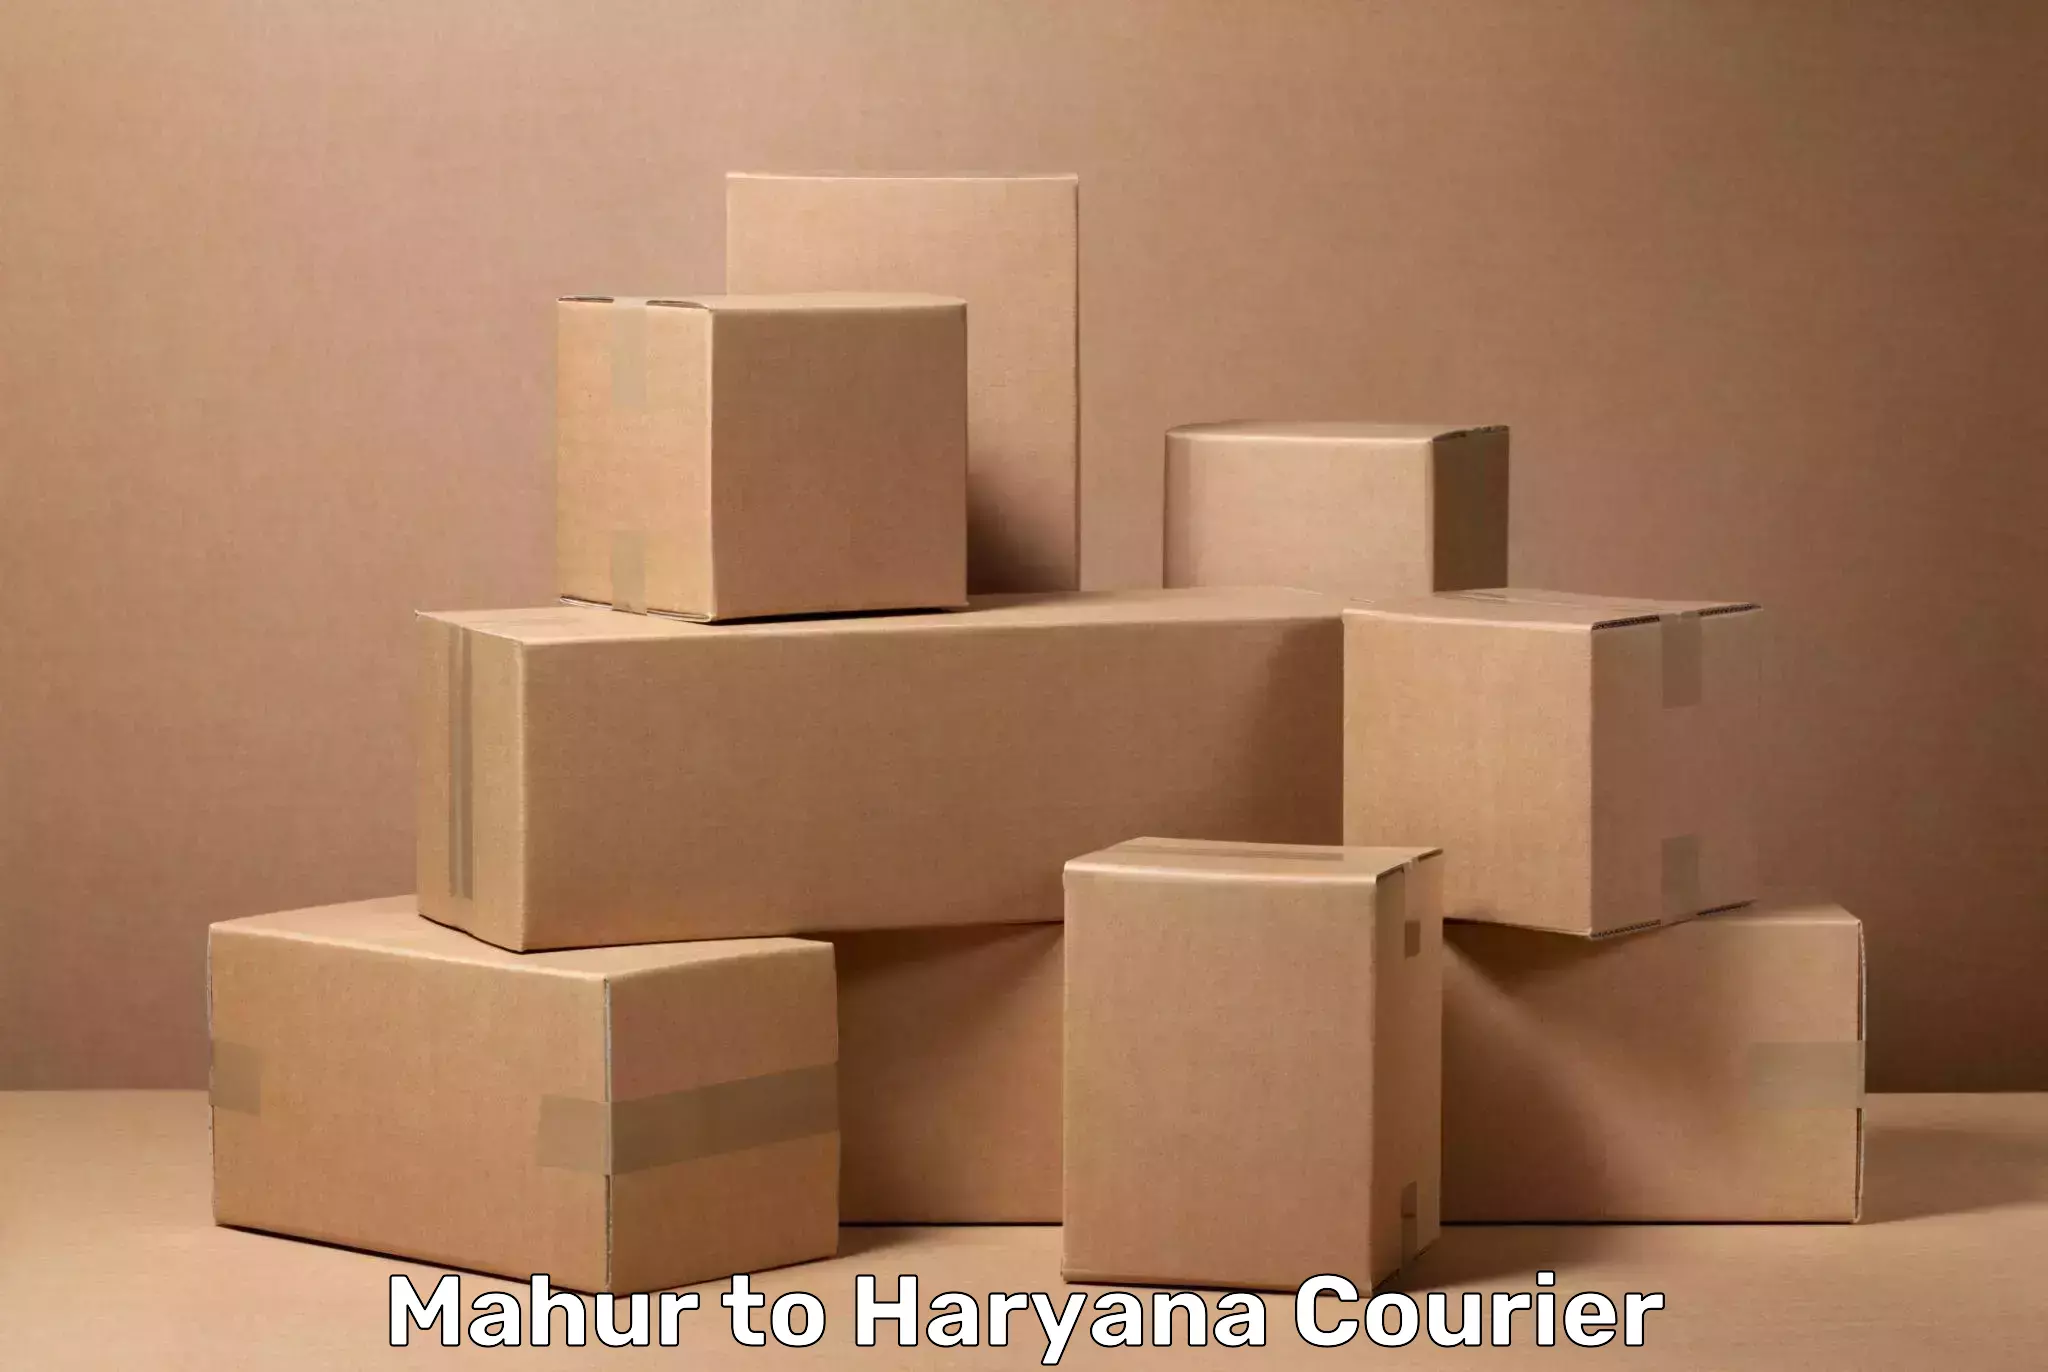 Luggage transfer service Mahur to Haryana